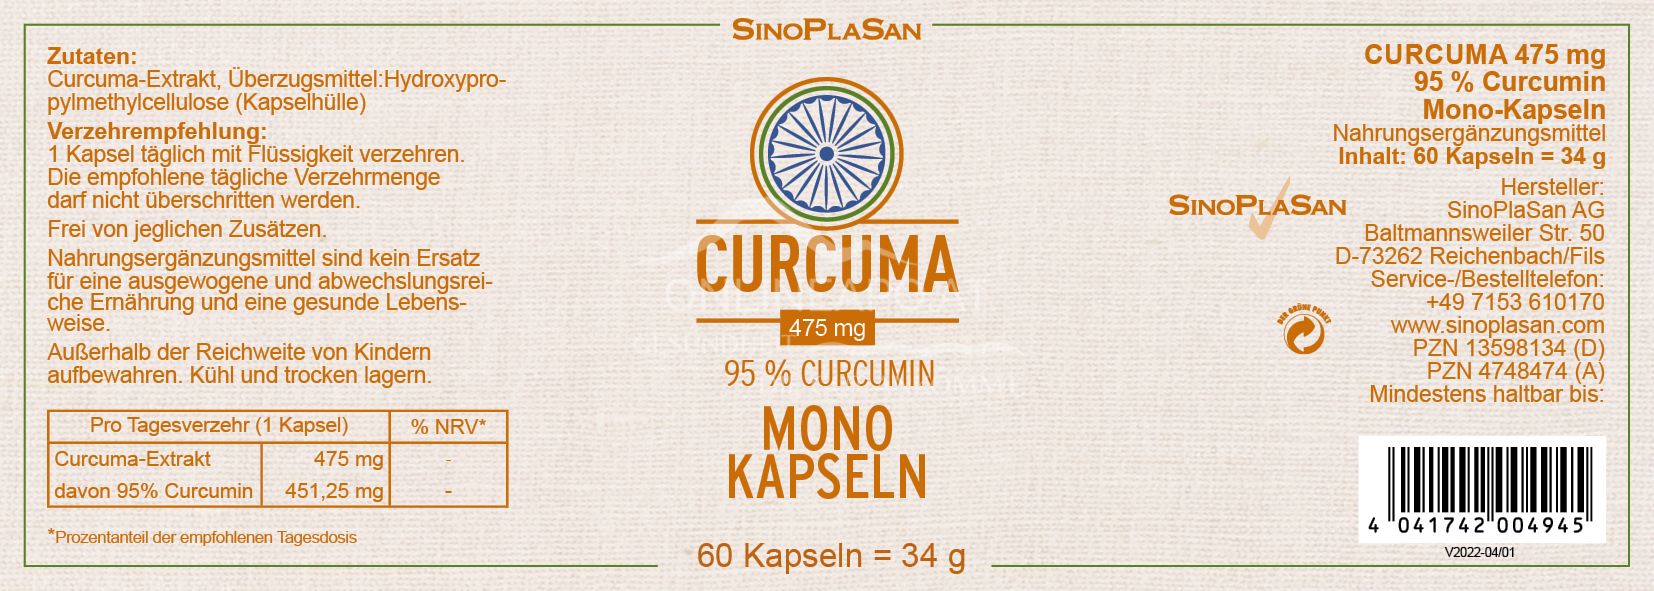 SinoPlaSan Curcuma - 95% Curcumin Mono Kapseln